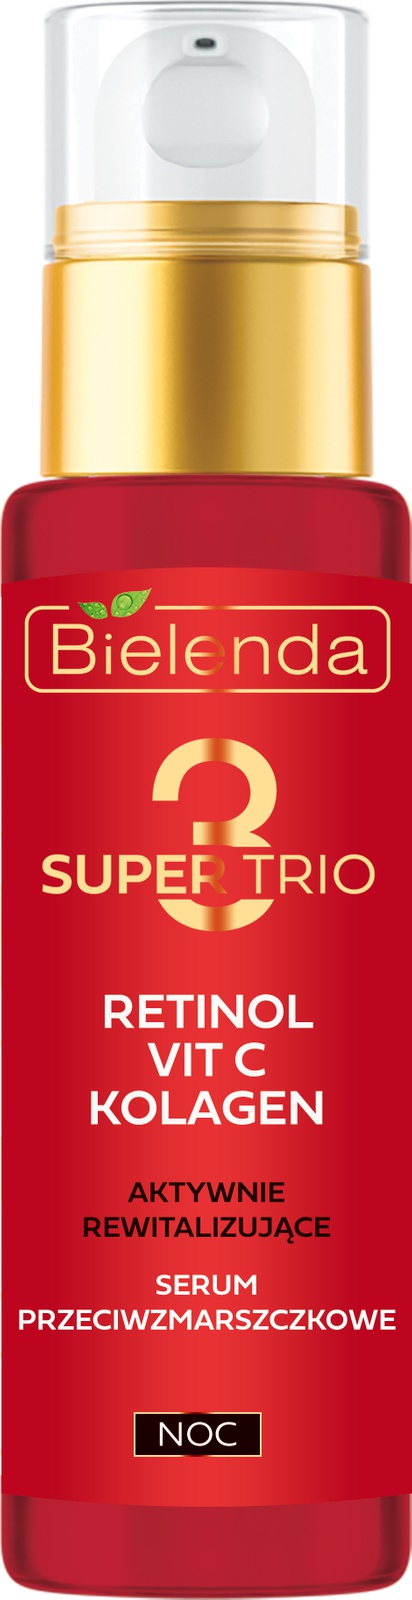 Bielenda Super Trio 3 Retinol + Vit C + Collagen Actively Revitalizing Anti-Wrinkle Serum